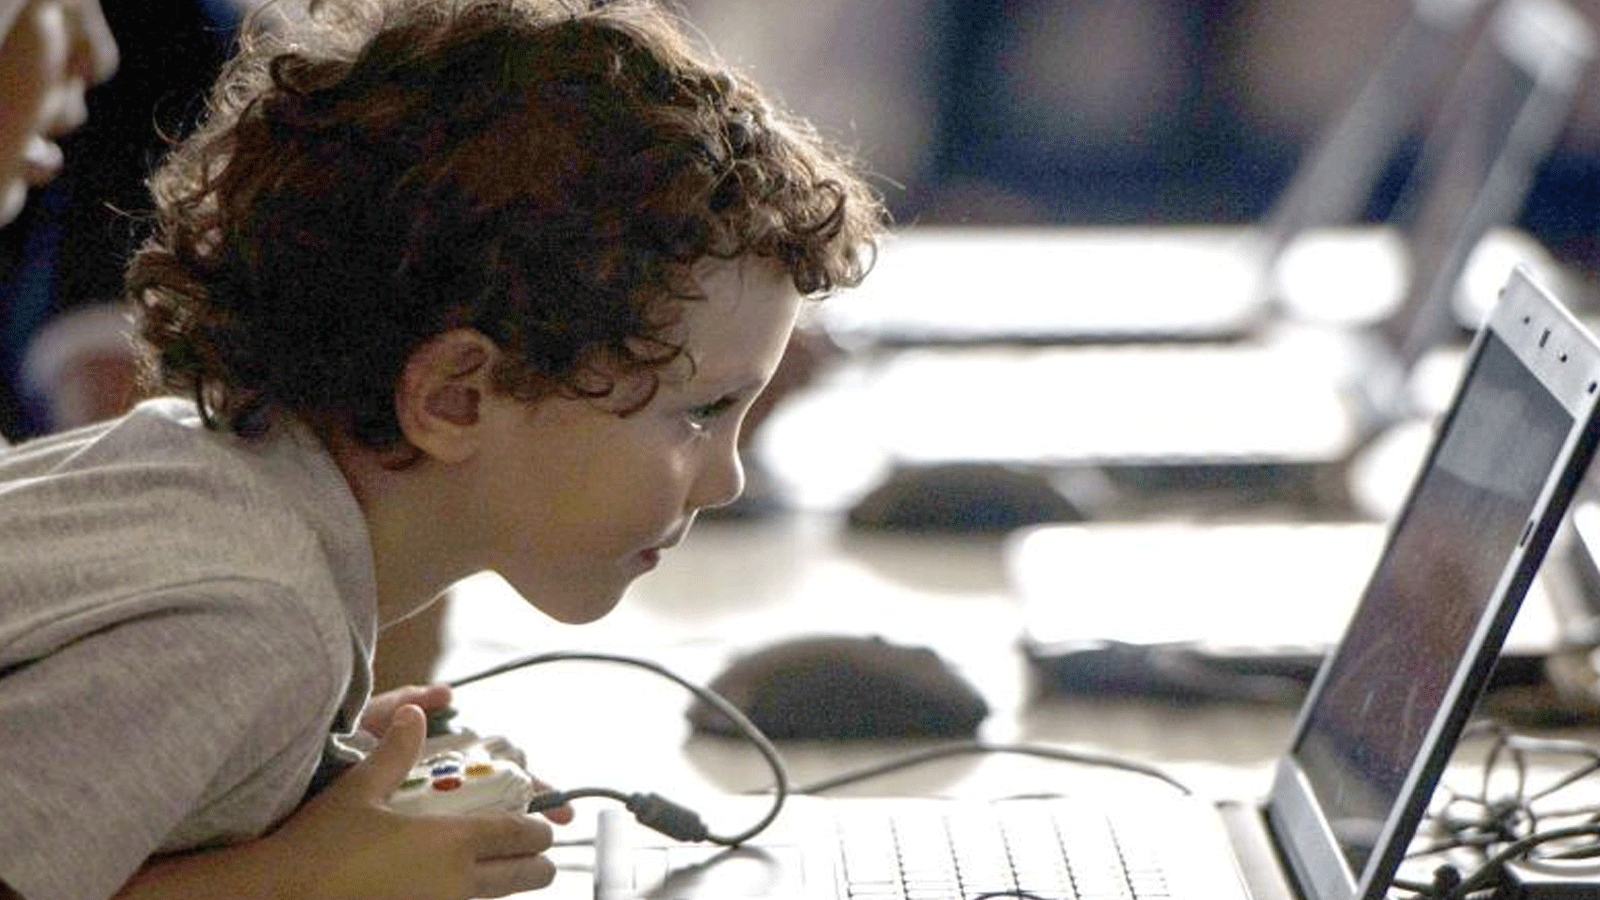 صورة توضيحية لطفل يلعب على الكومبيوتر متأخراً على موعد نومه